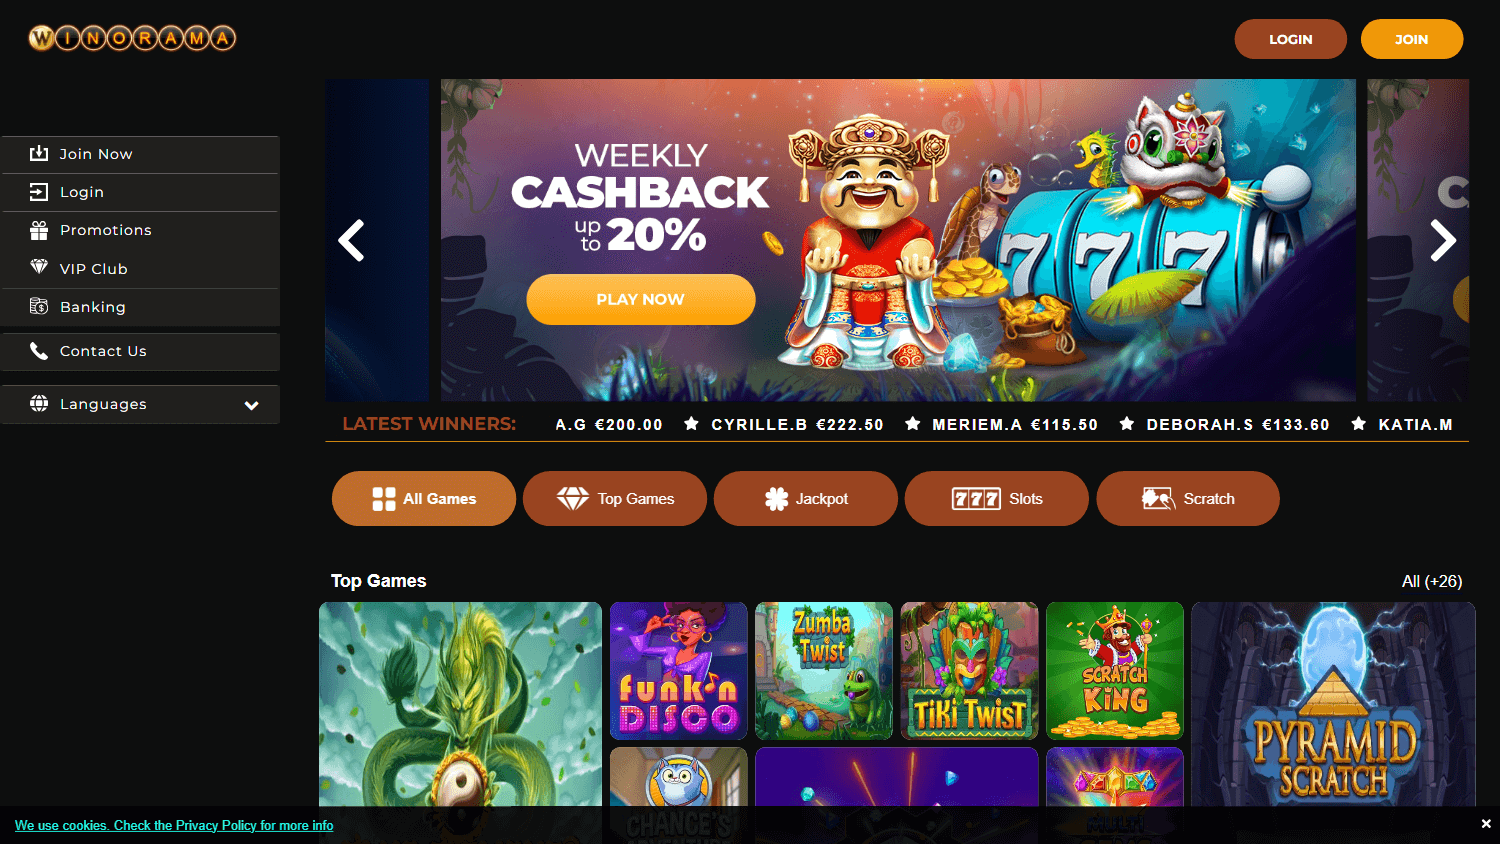 winorama_casino_homepage_desktop